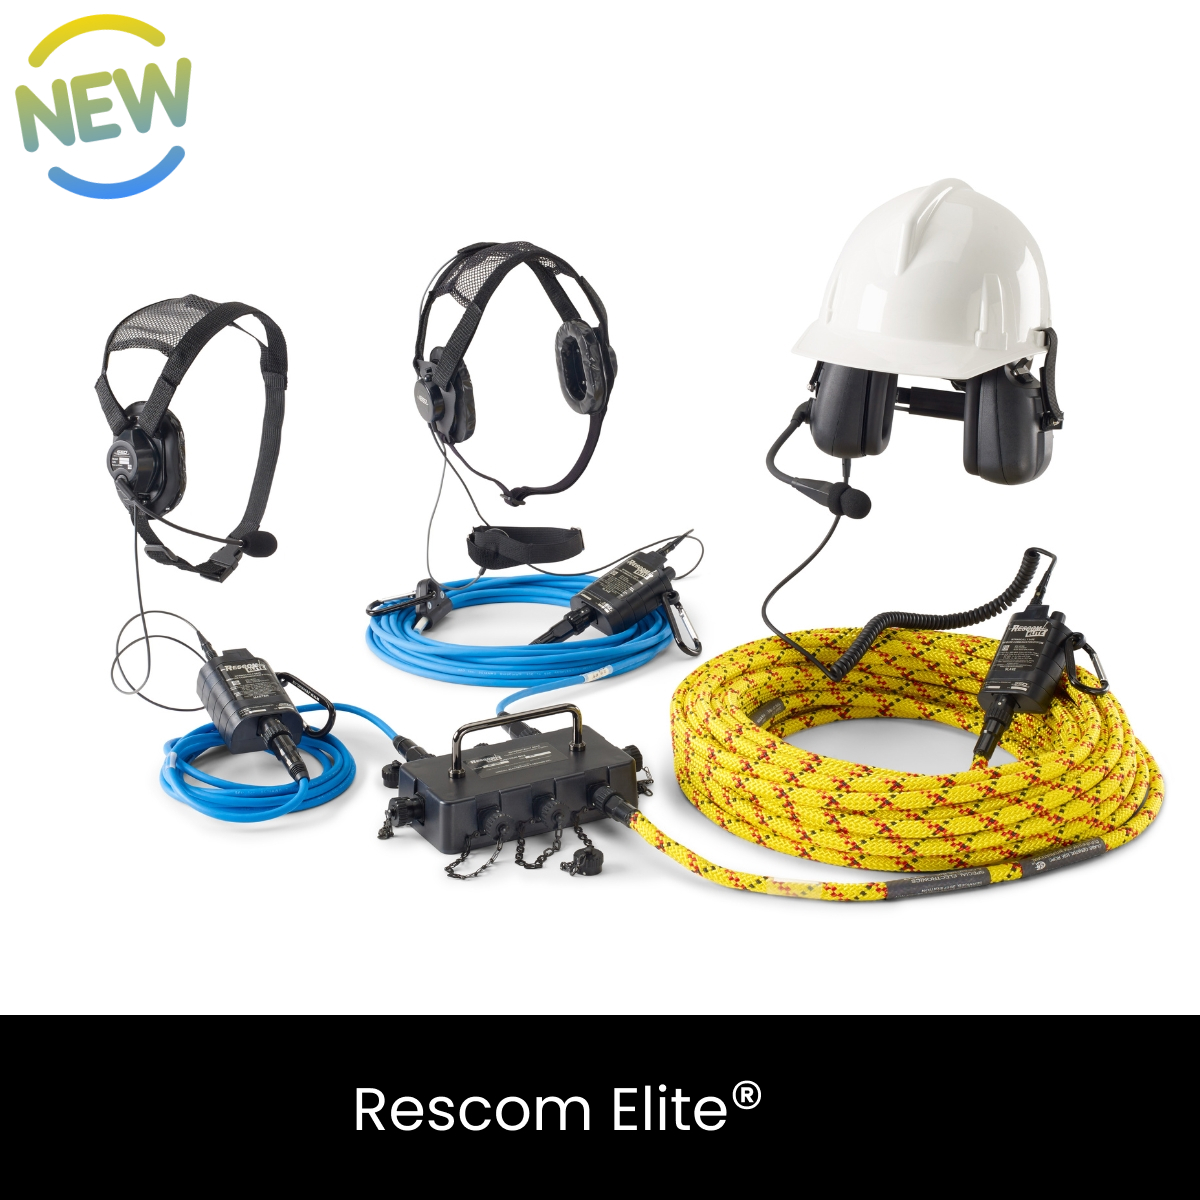 Rescom Elite - Intrinsically Safe Rescue Communication System